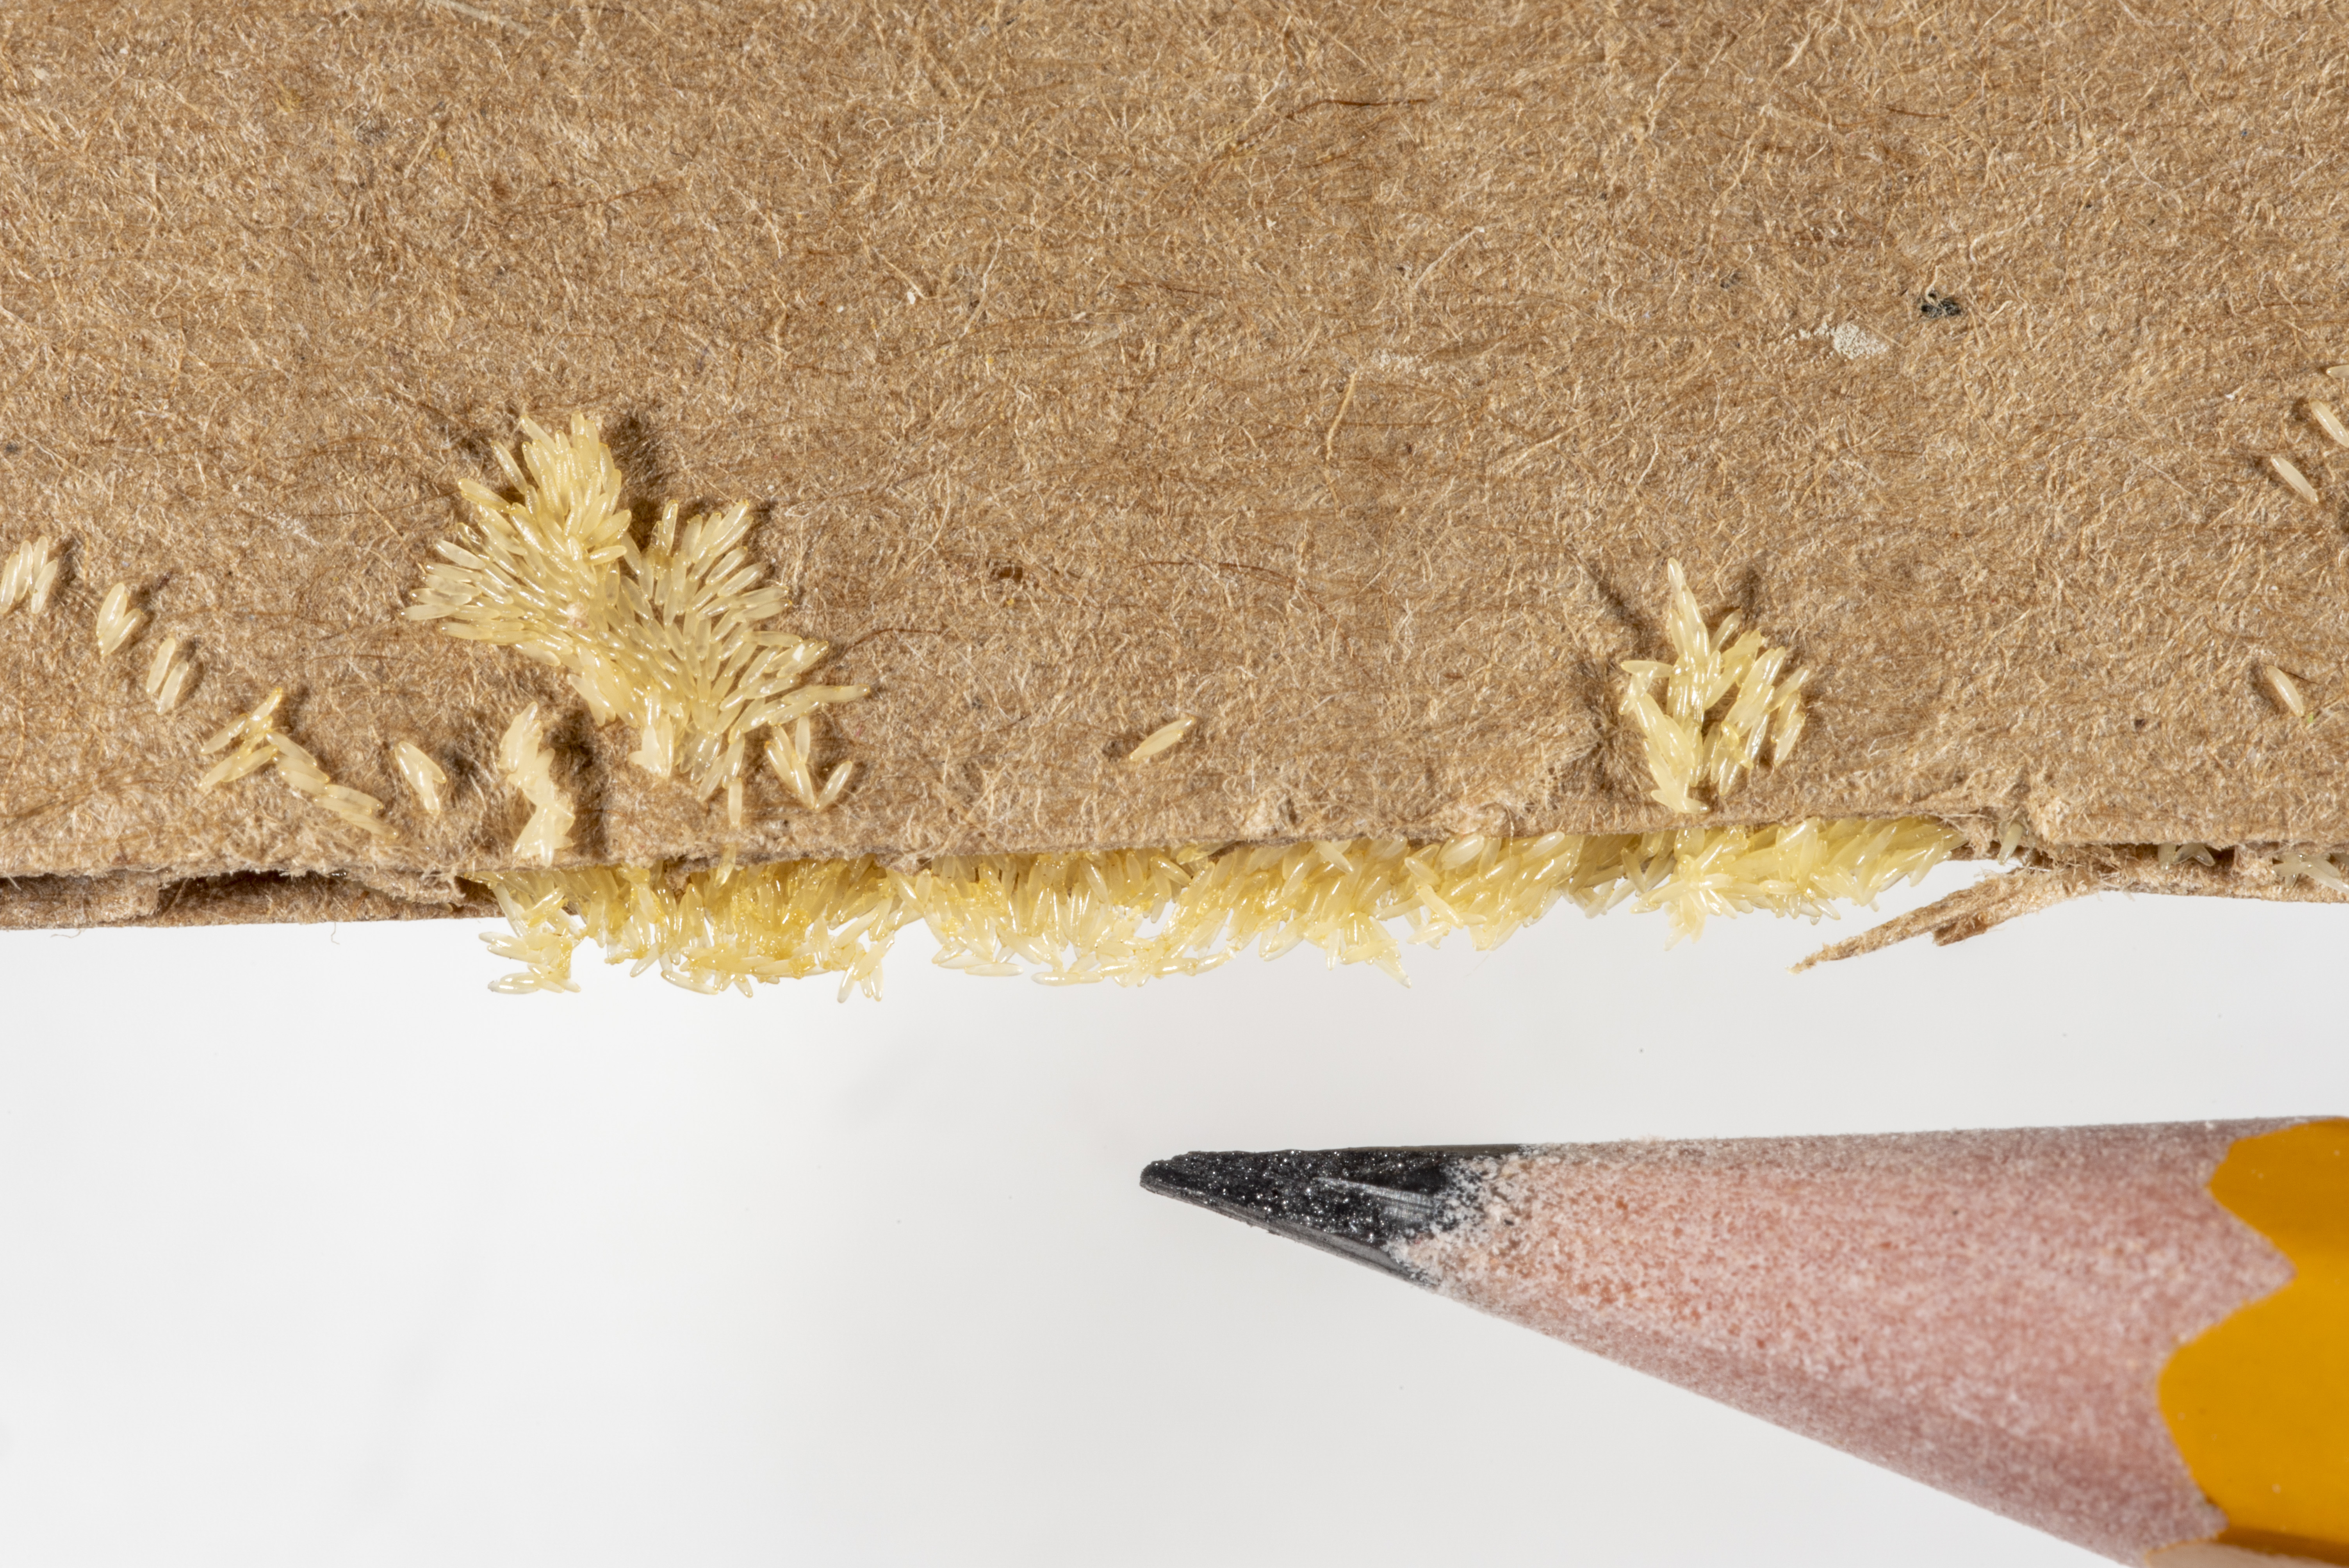 Figure 4. Black soldier fly eggs deposited on a piece of corrugated
cardboard. (<em>Photo credit: John Obermeyer, Purdue Entomology</em>)